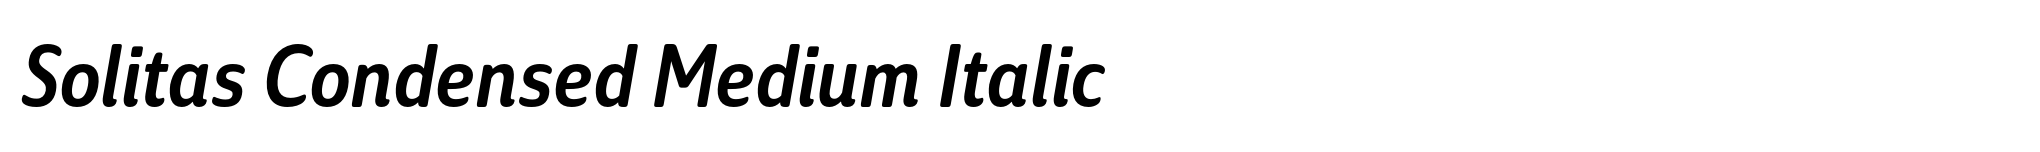 Solitas Condensed Medium Italic image